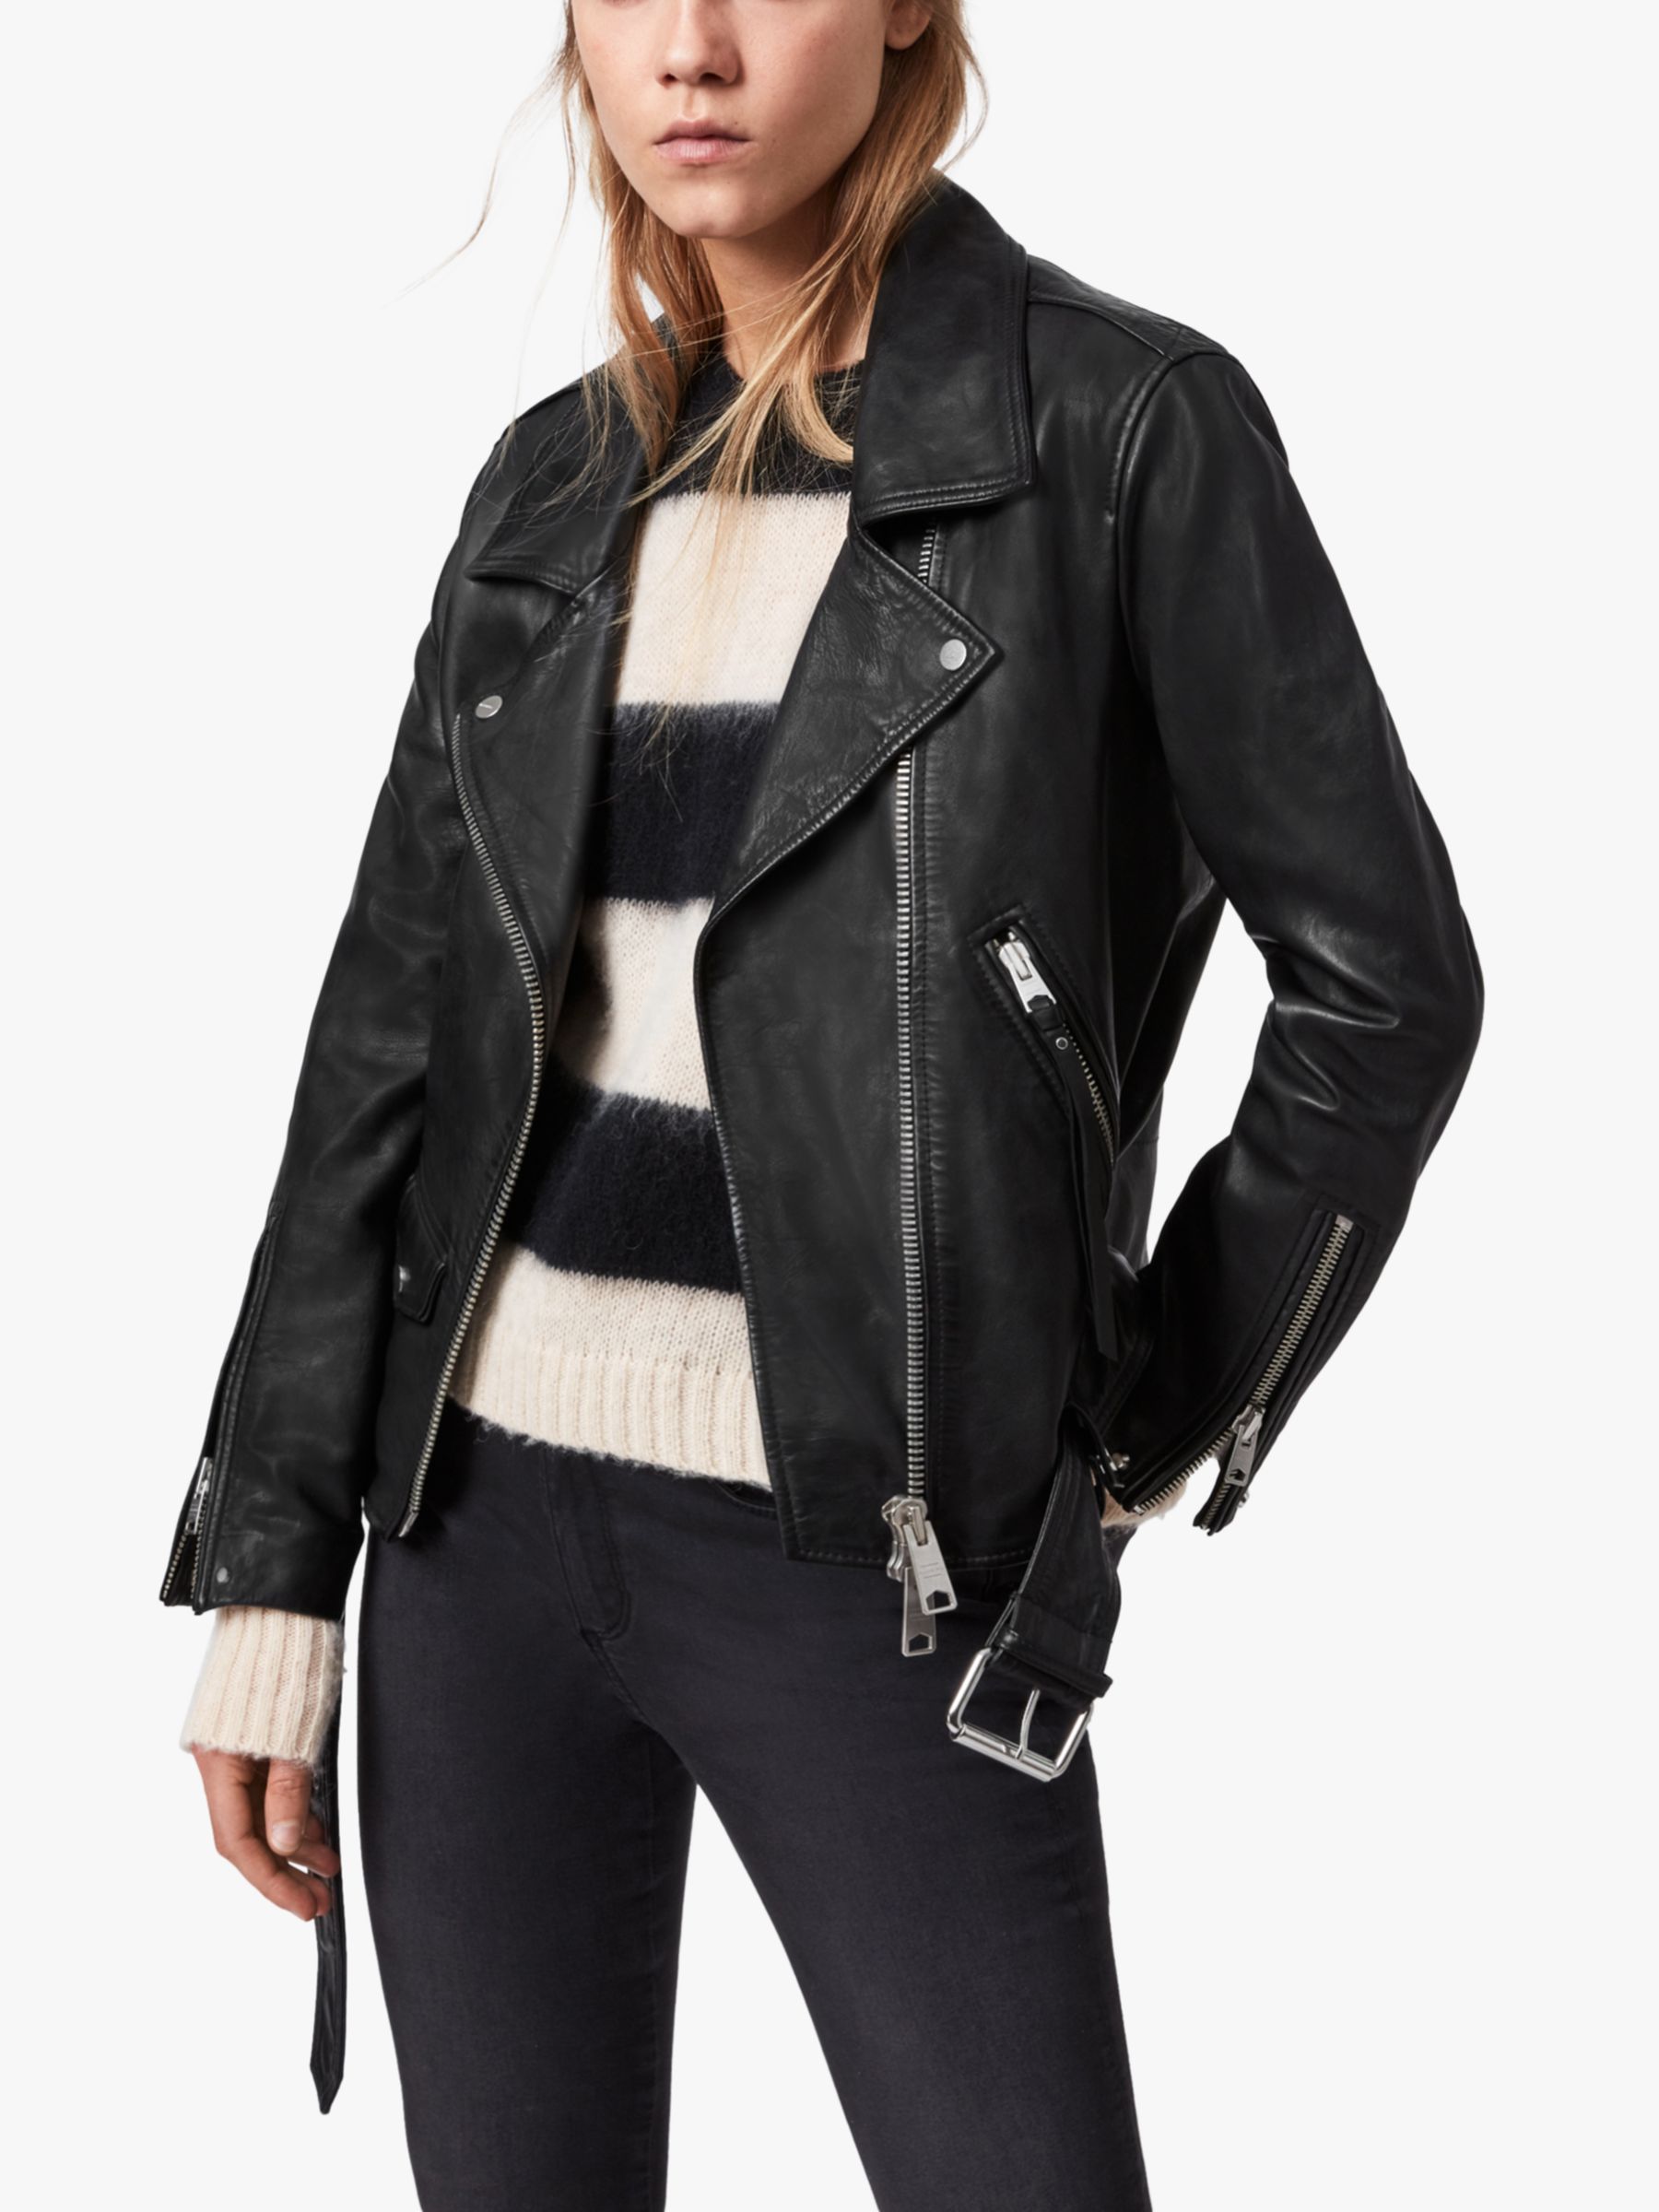 AllSaints Luna Leather Biker Jacket, Black at John Lewis & Partners